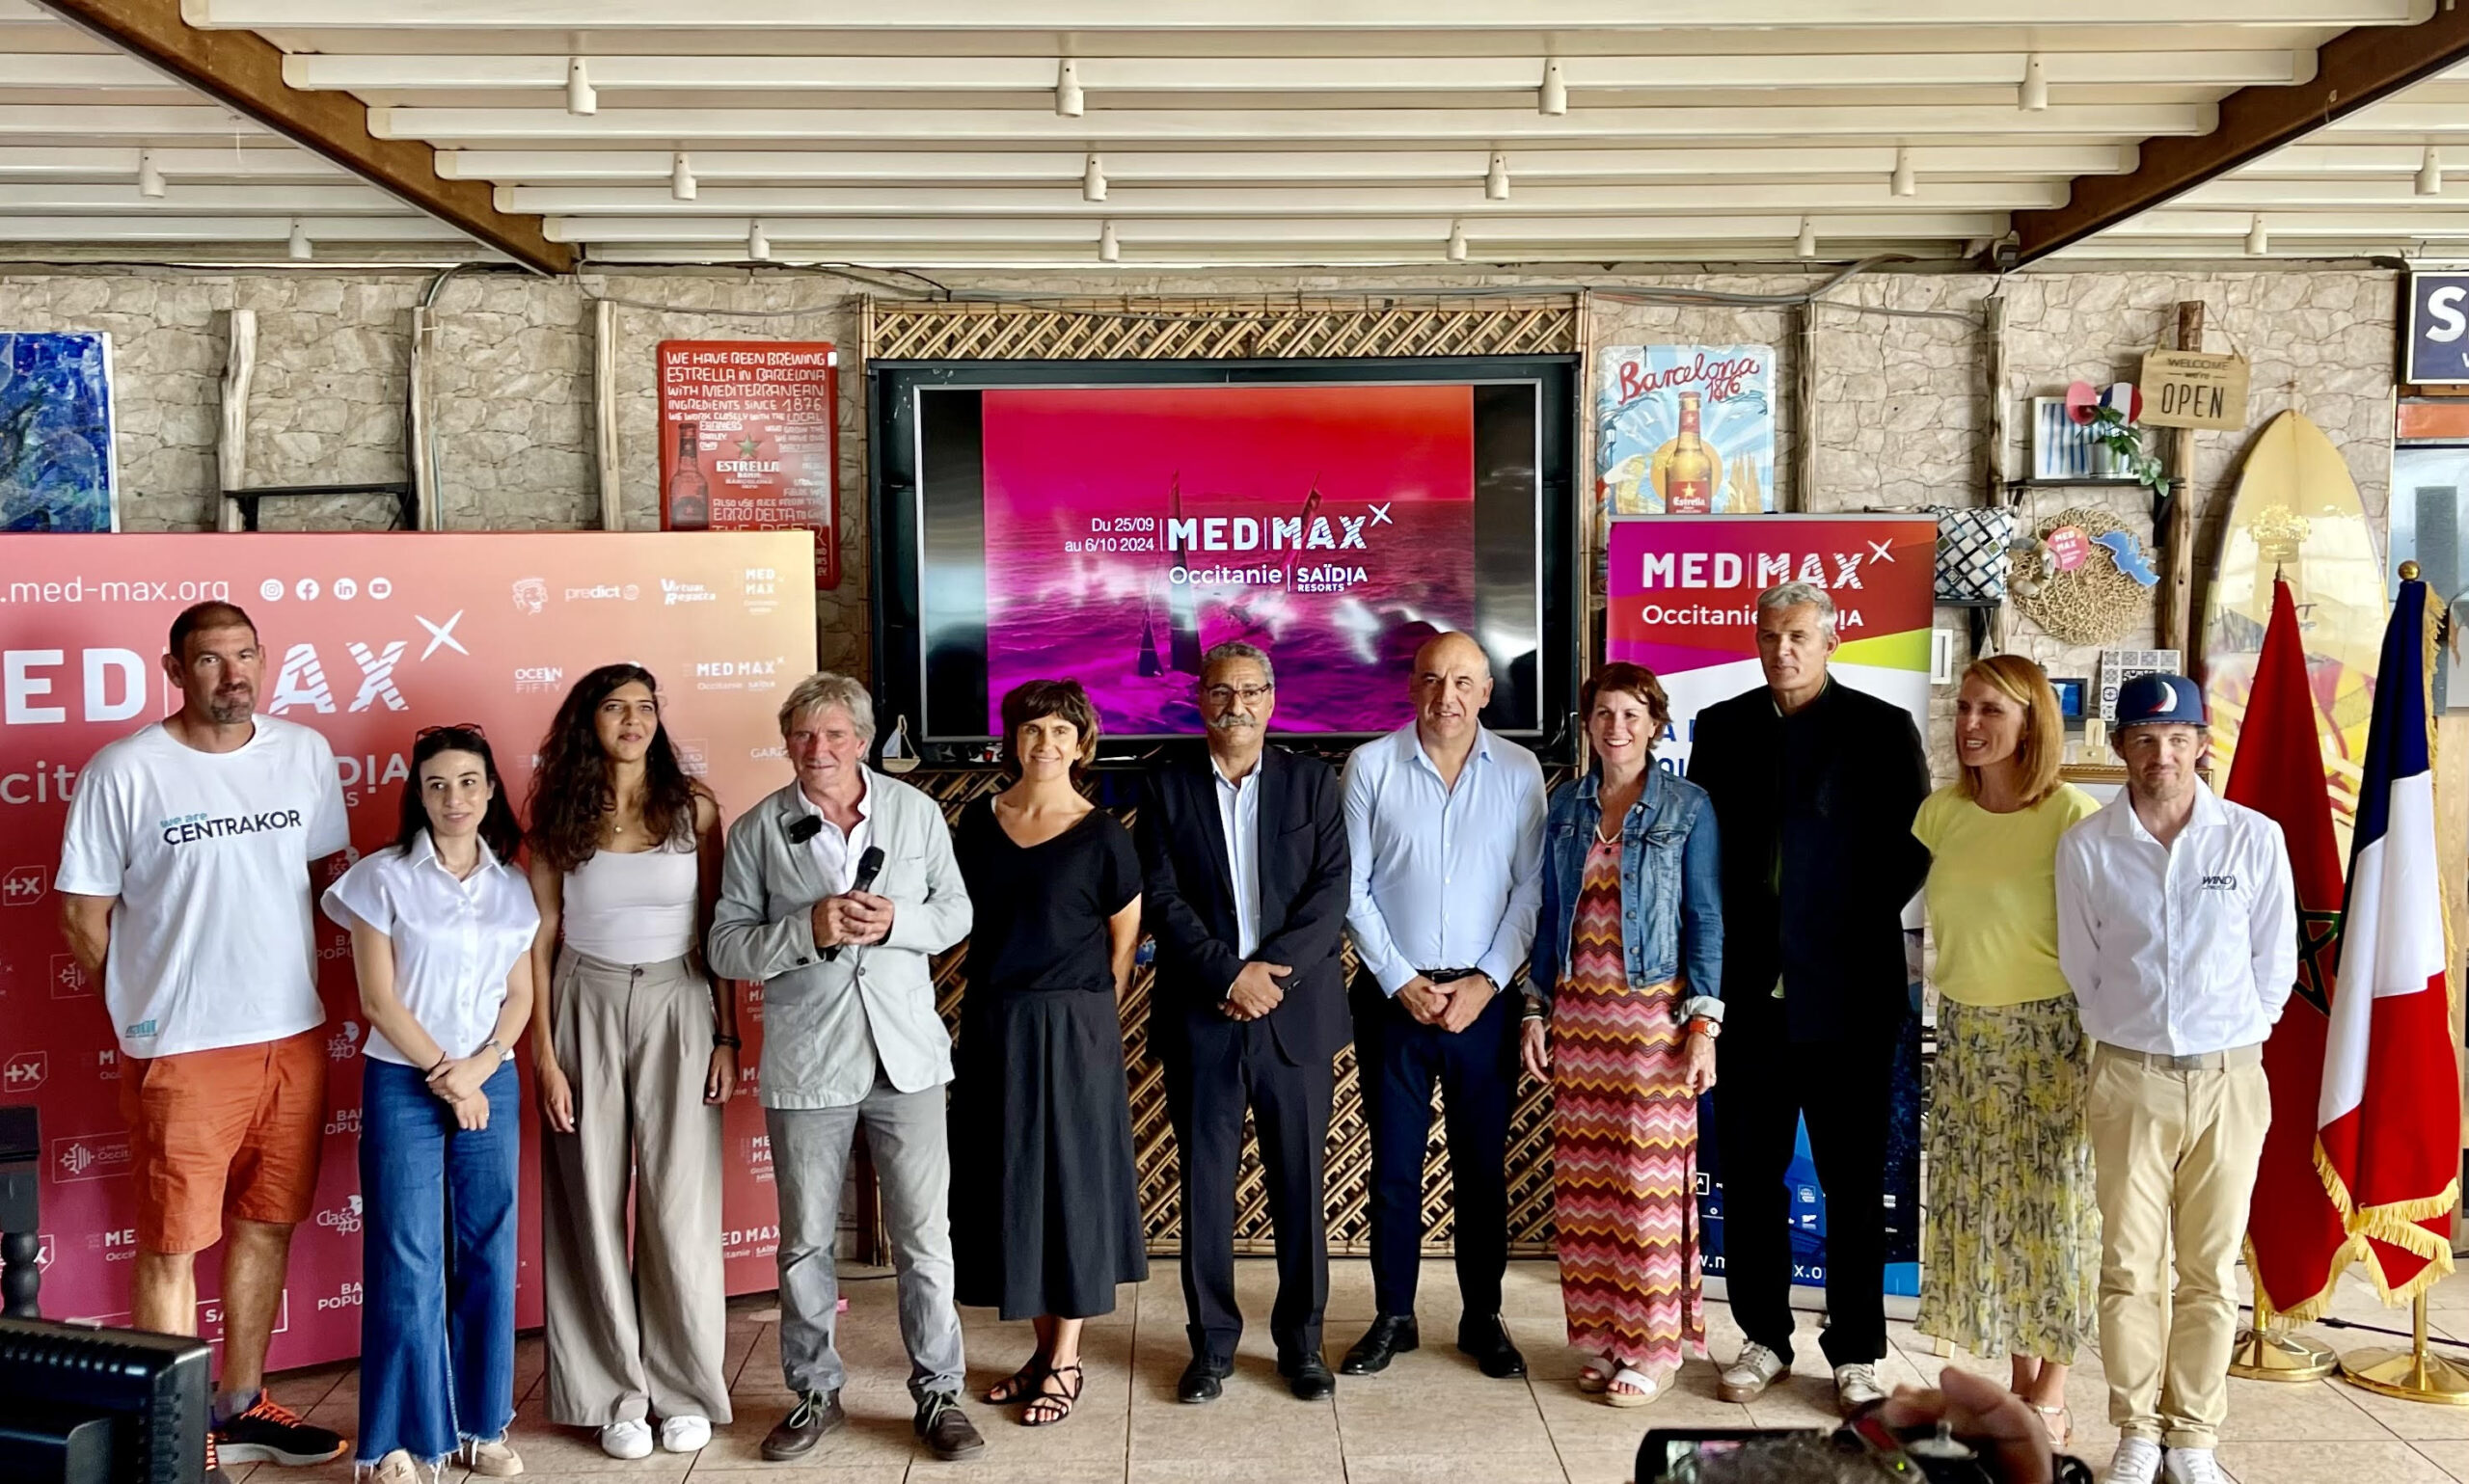 Les voiliers de Medmax Occitanie l Saïdia Resorts investissent la Méditerranée